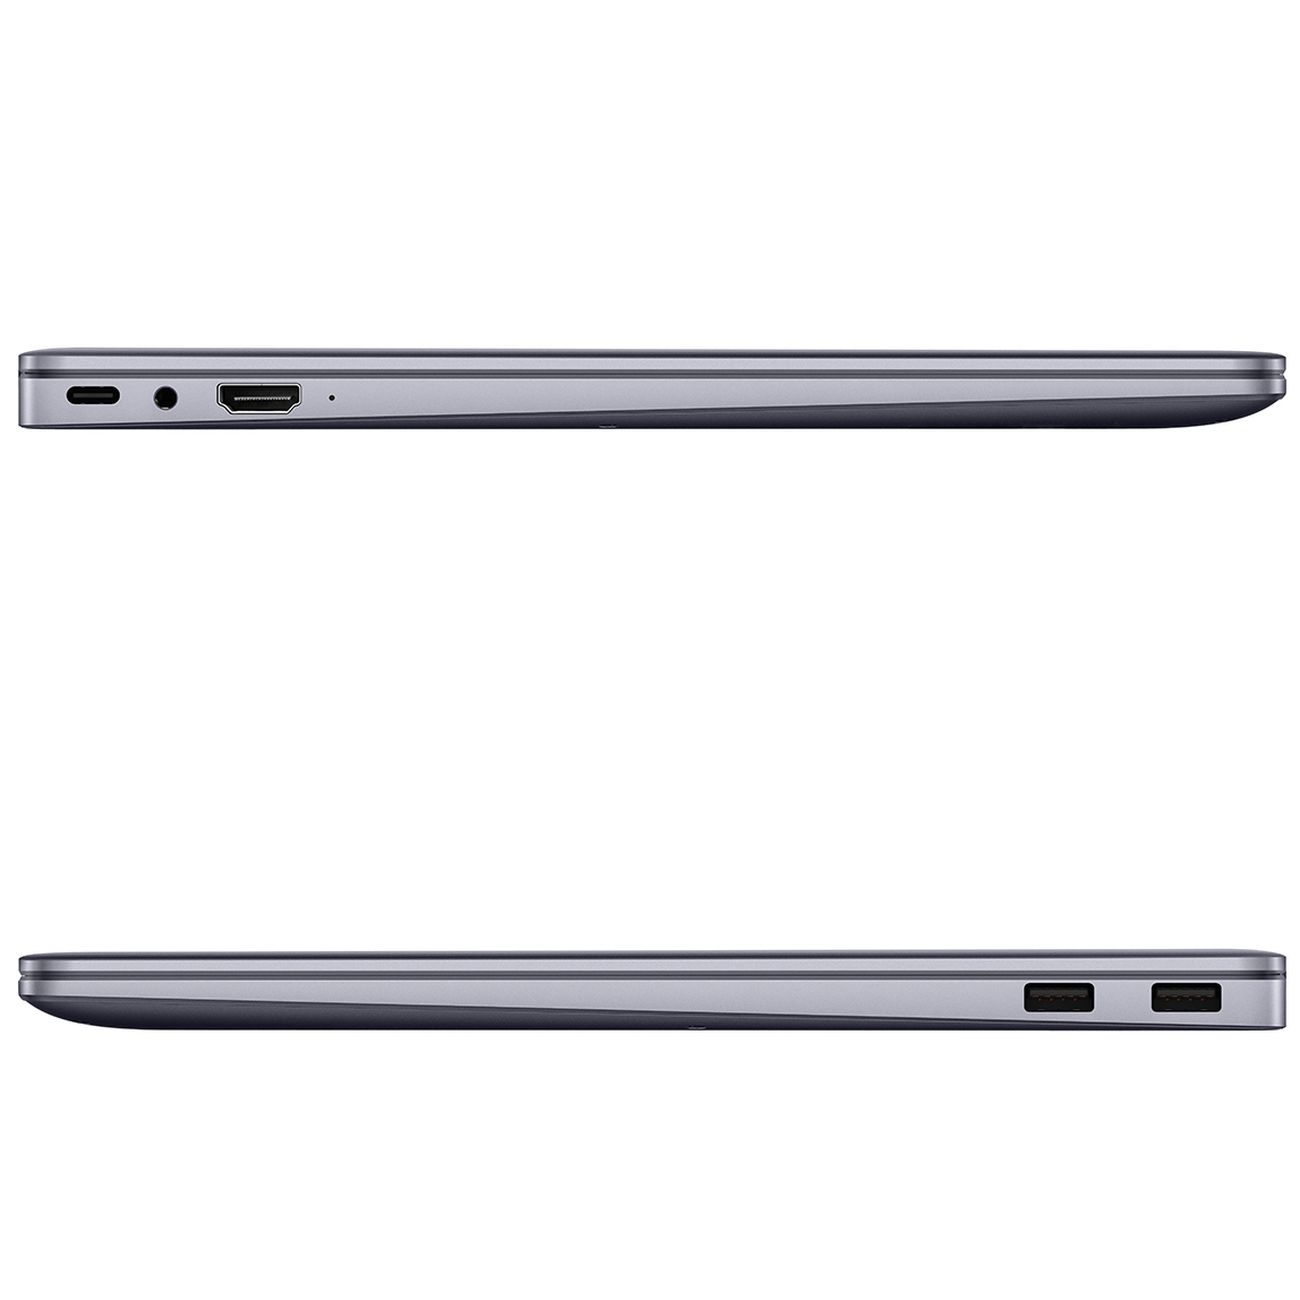 Huawei MATEBOOK 14 KLVF-X 53013pet. Ультрабук Huawei MATEBOOK 14 KLVF-X. 16" Ноутбук Huawei MATEBOOK 16s Crefg-x серый. D 14 MDF-X 53013rhl.